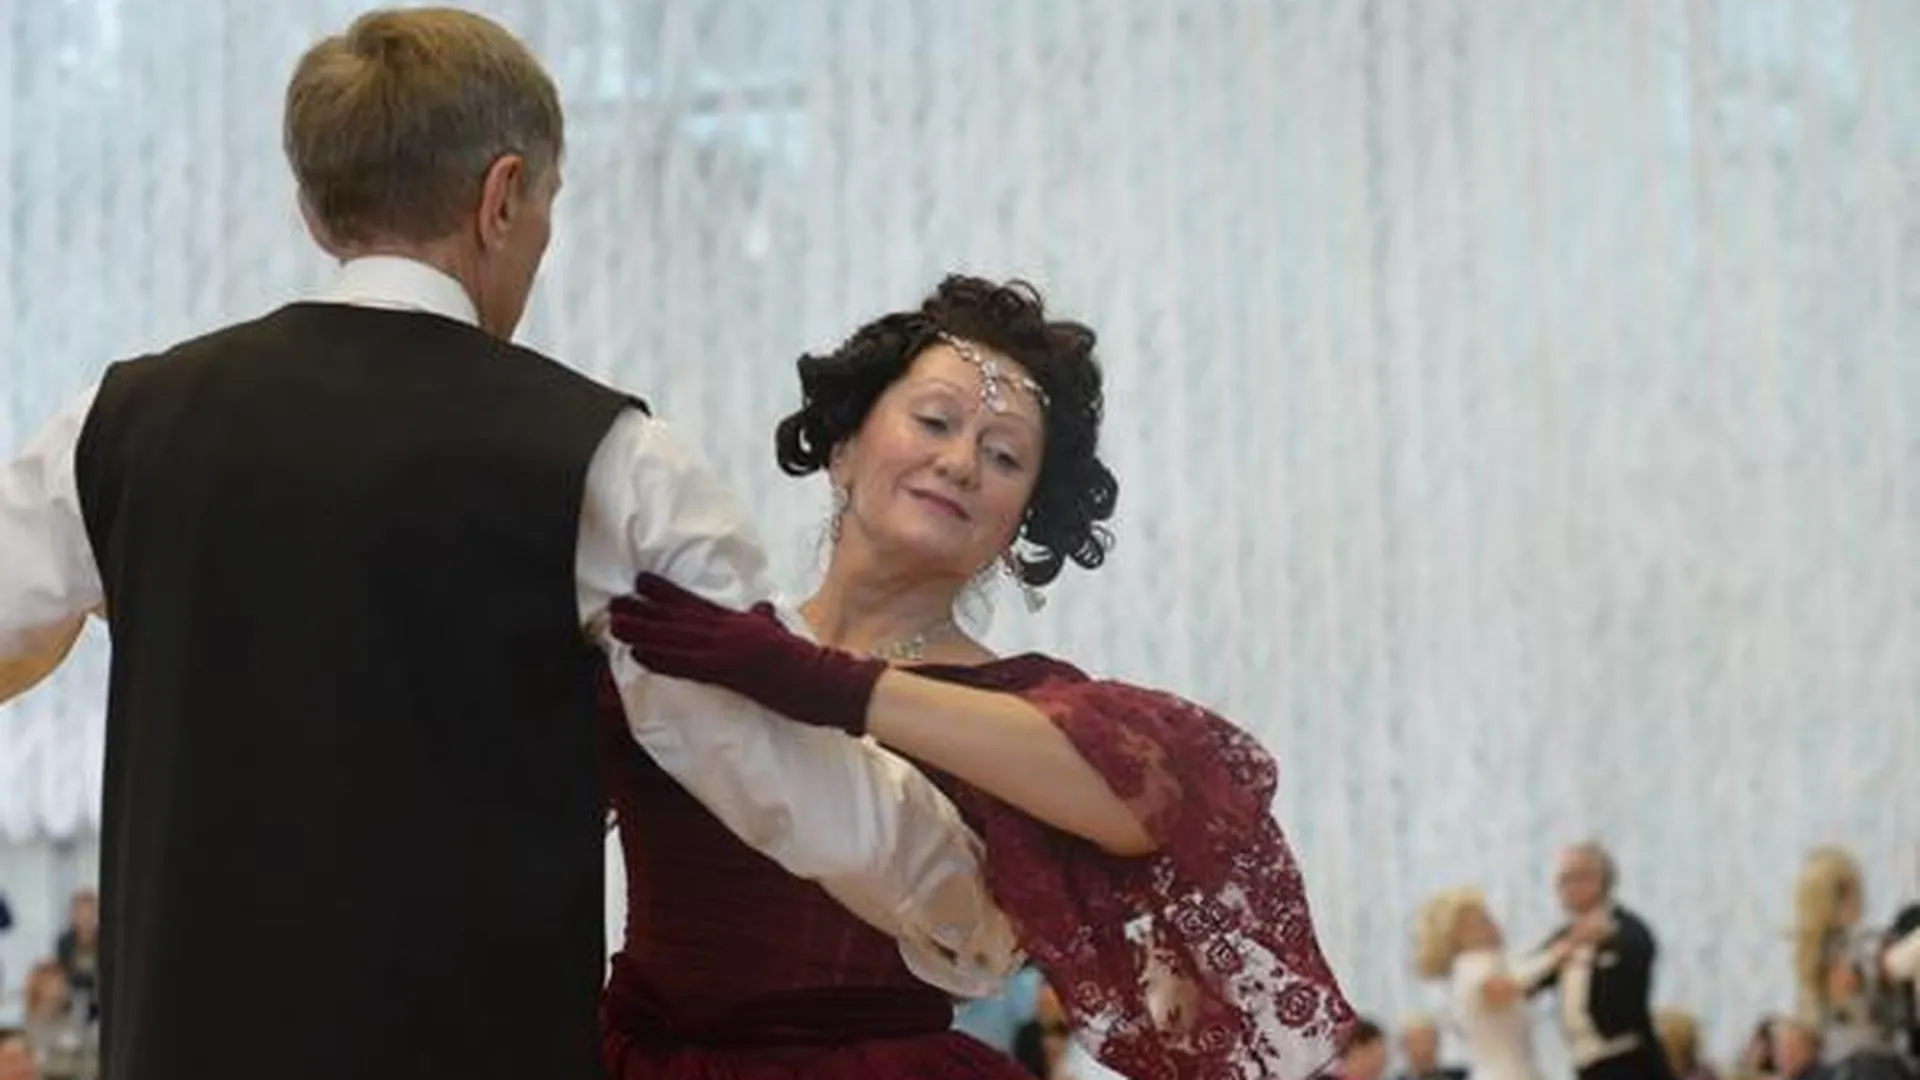 Кружок бальных танцев для ветеранов открылся в Ступино